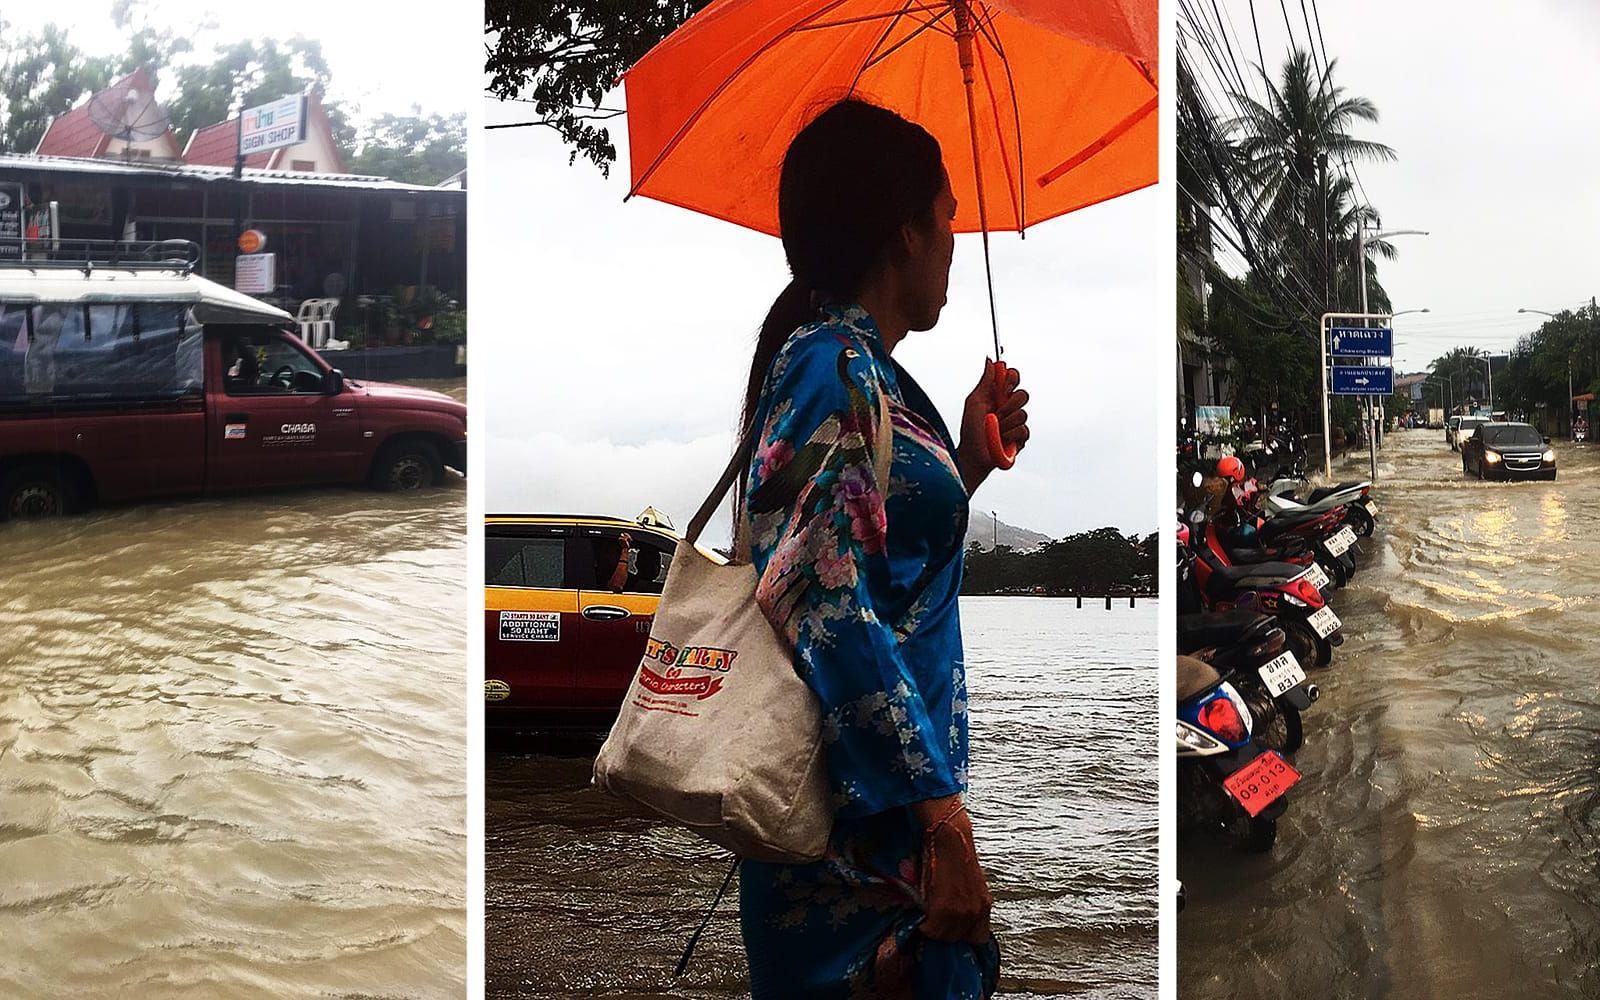 Bland de översvämningsdrabbade områdena i Thailand finns den populära turistorten Koh Samui. FOTO: TT och PRIVAT